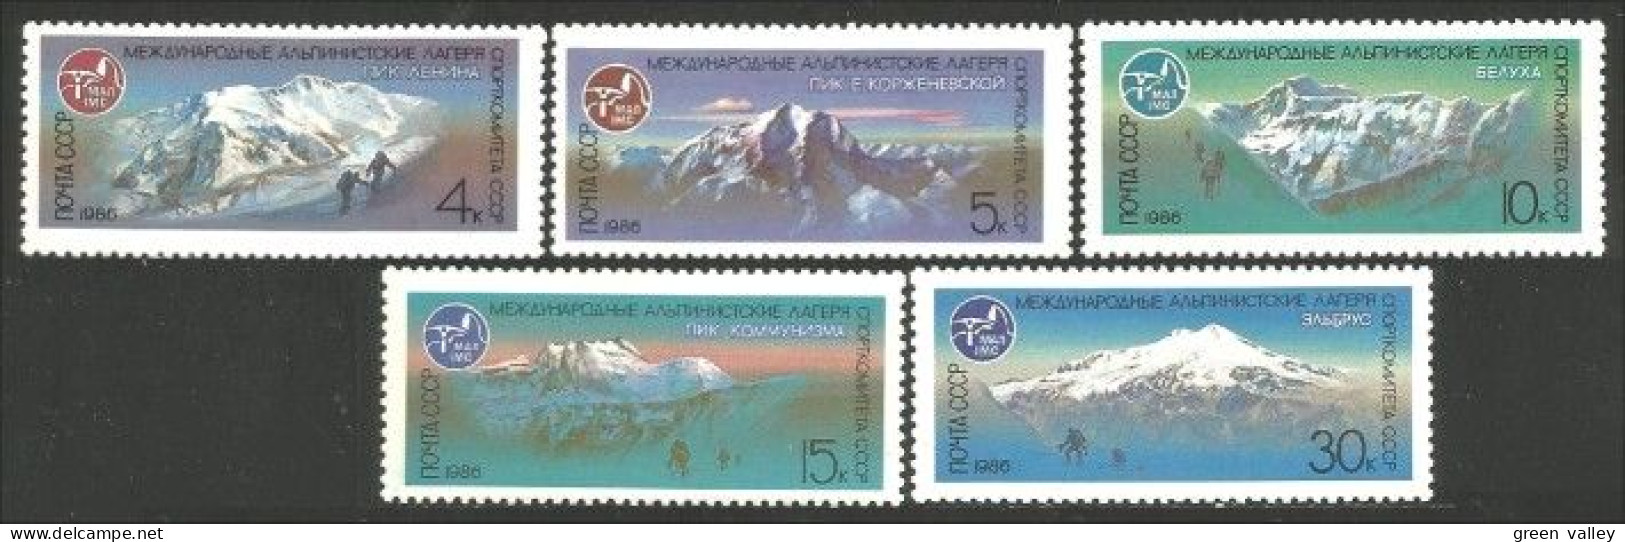 772 Russie 1986 Alpinisme Escalade Mountain Climbing MNH ** Neuf SC (RUC-414) - Escalada